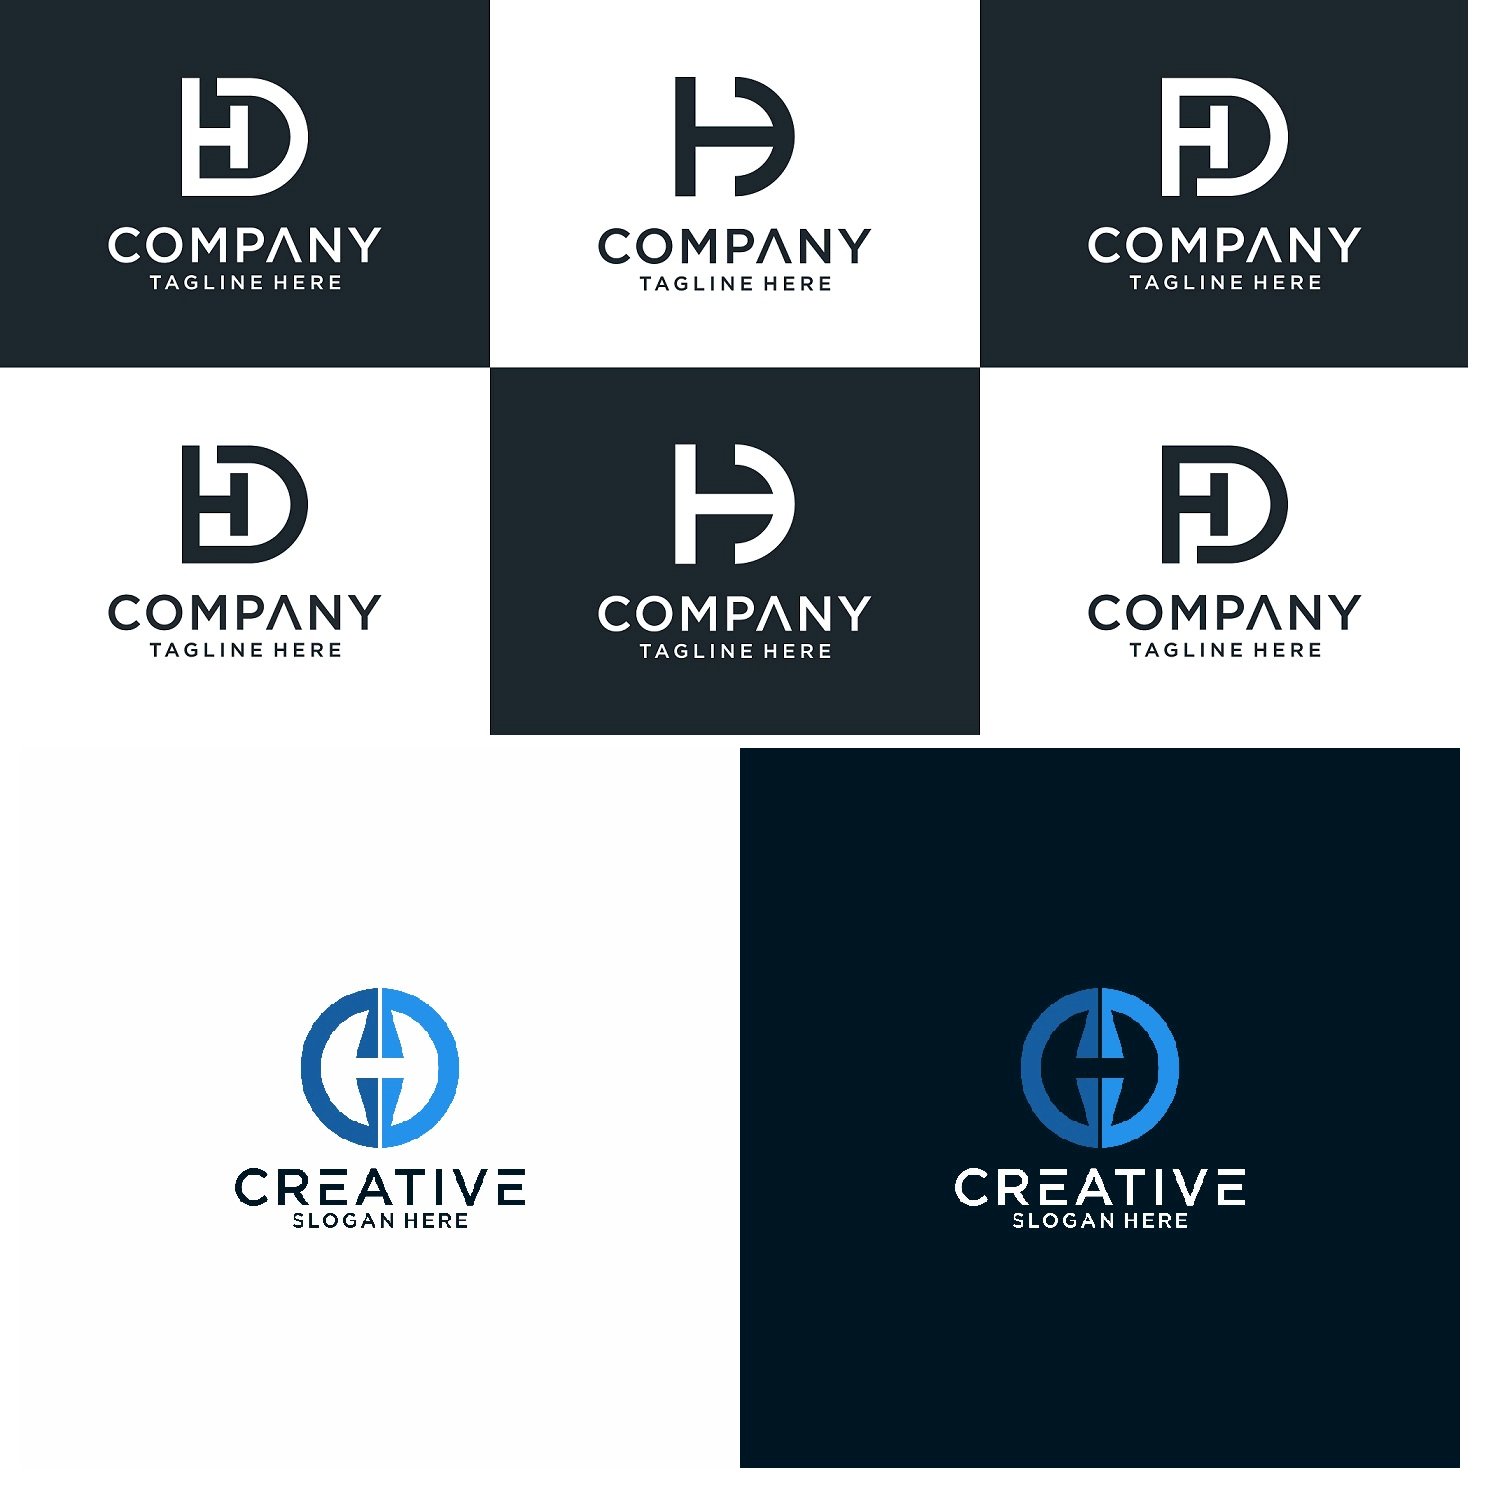 Thiết kế logo chữ hd độc đáo và đẳng cấp cho doanh nghiệp của bạn